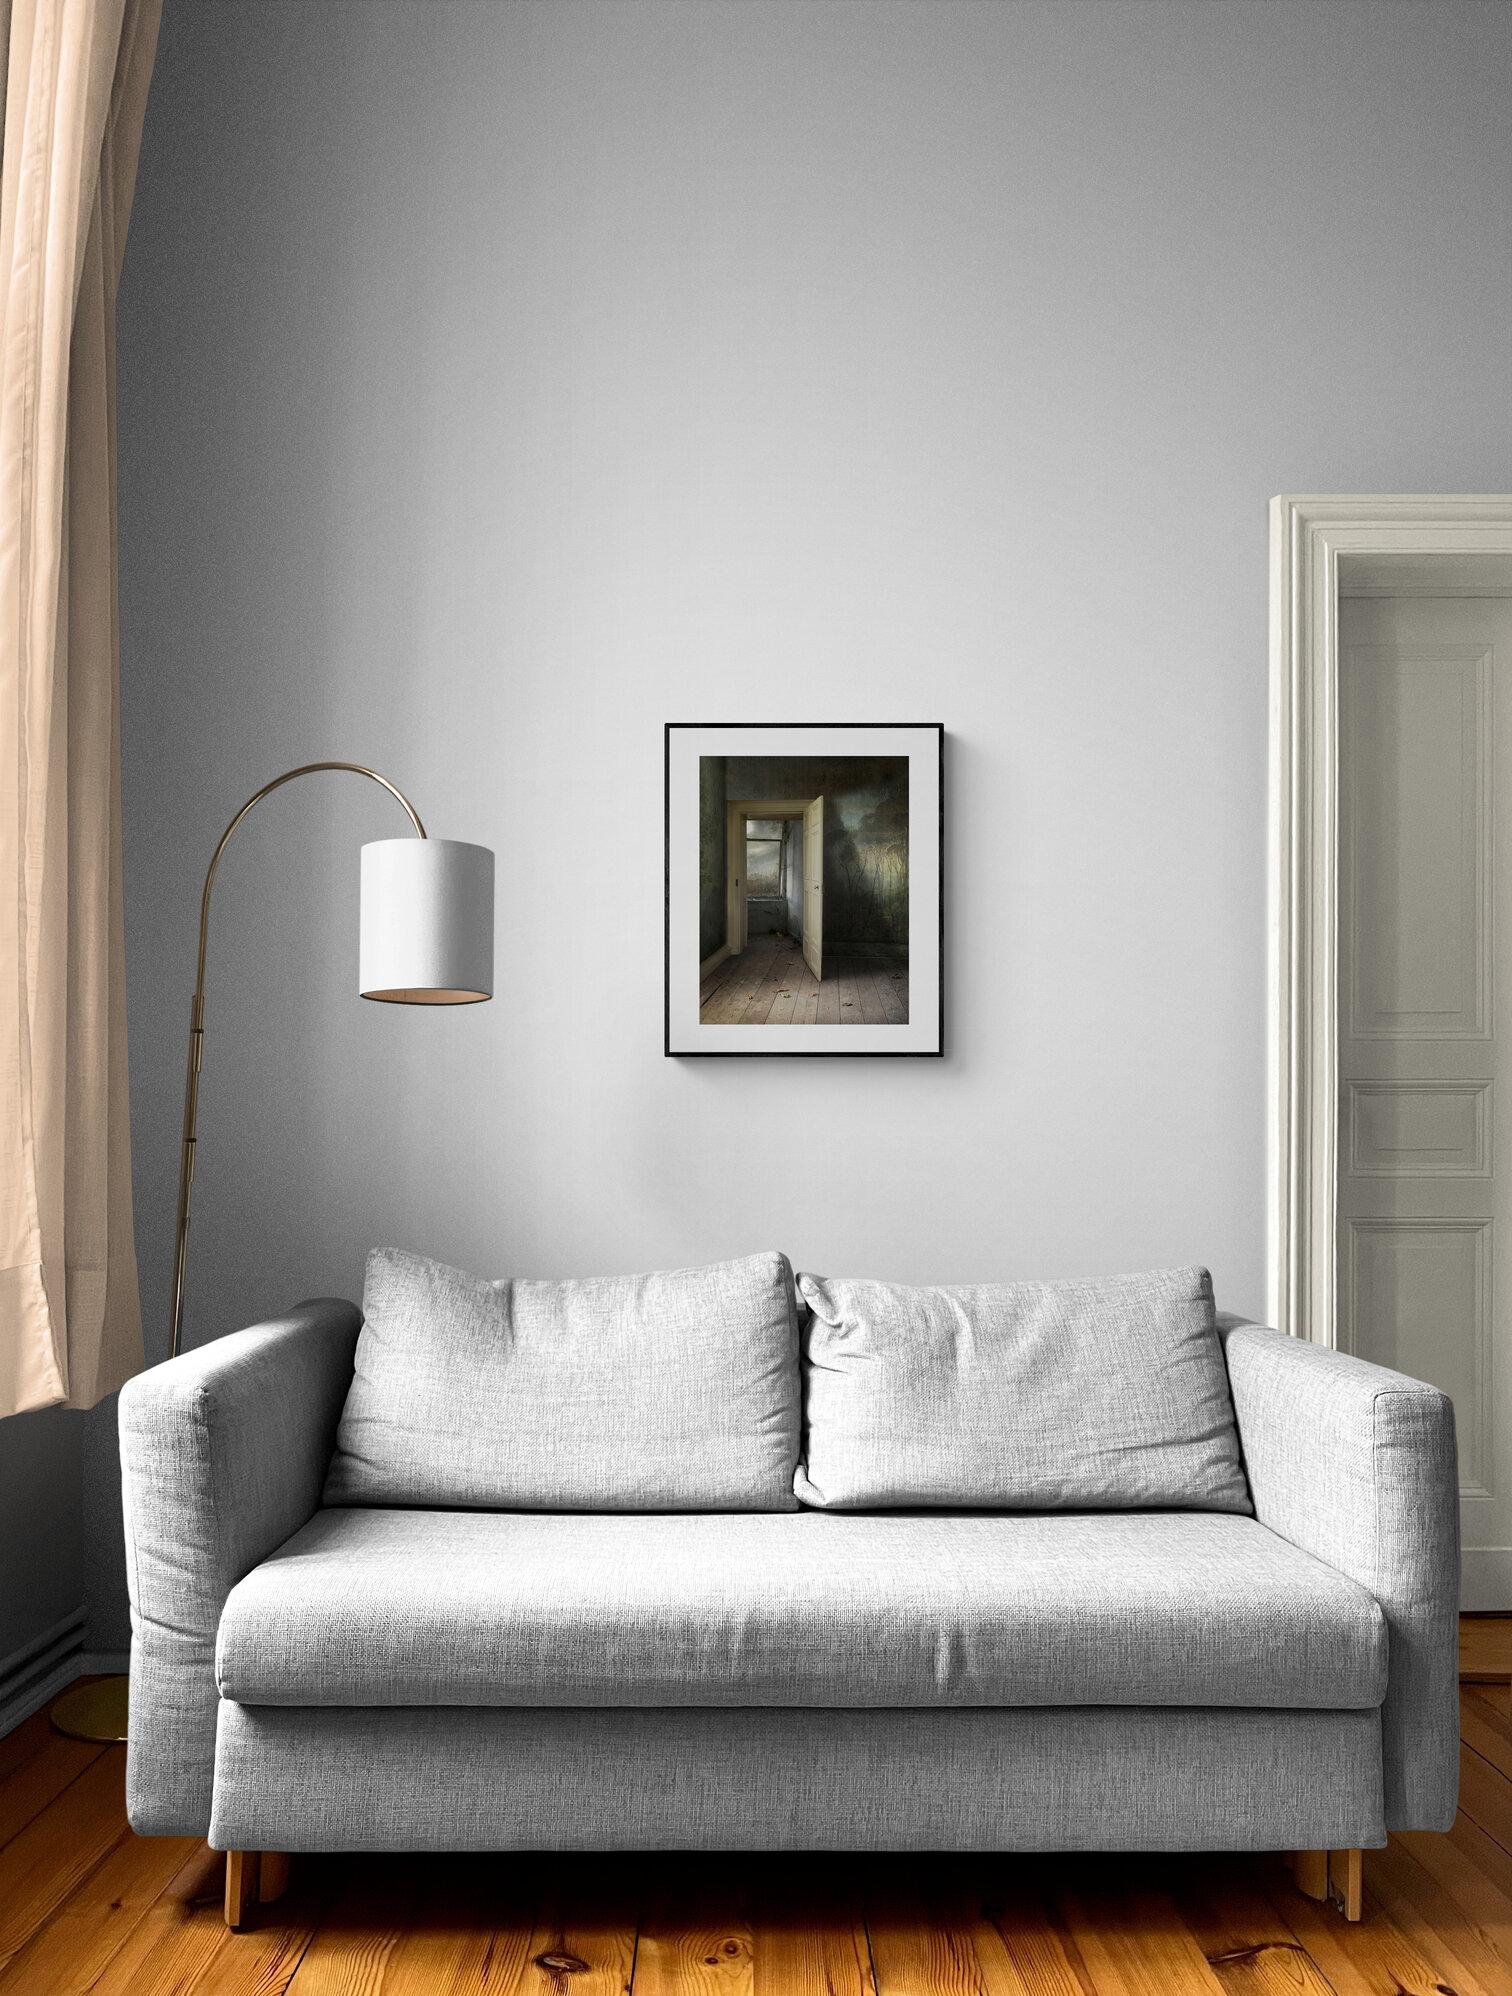 Interieur mit offener Tür – Fotomontage, Archivalisches Pigmentdruck, Inneneinrichtung (Schwarz), Figurative Photograph, von Suzanne Moxhay